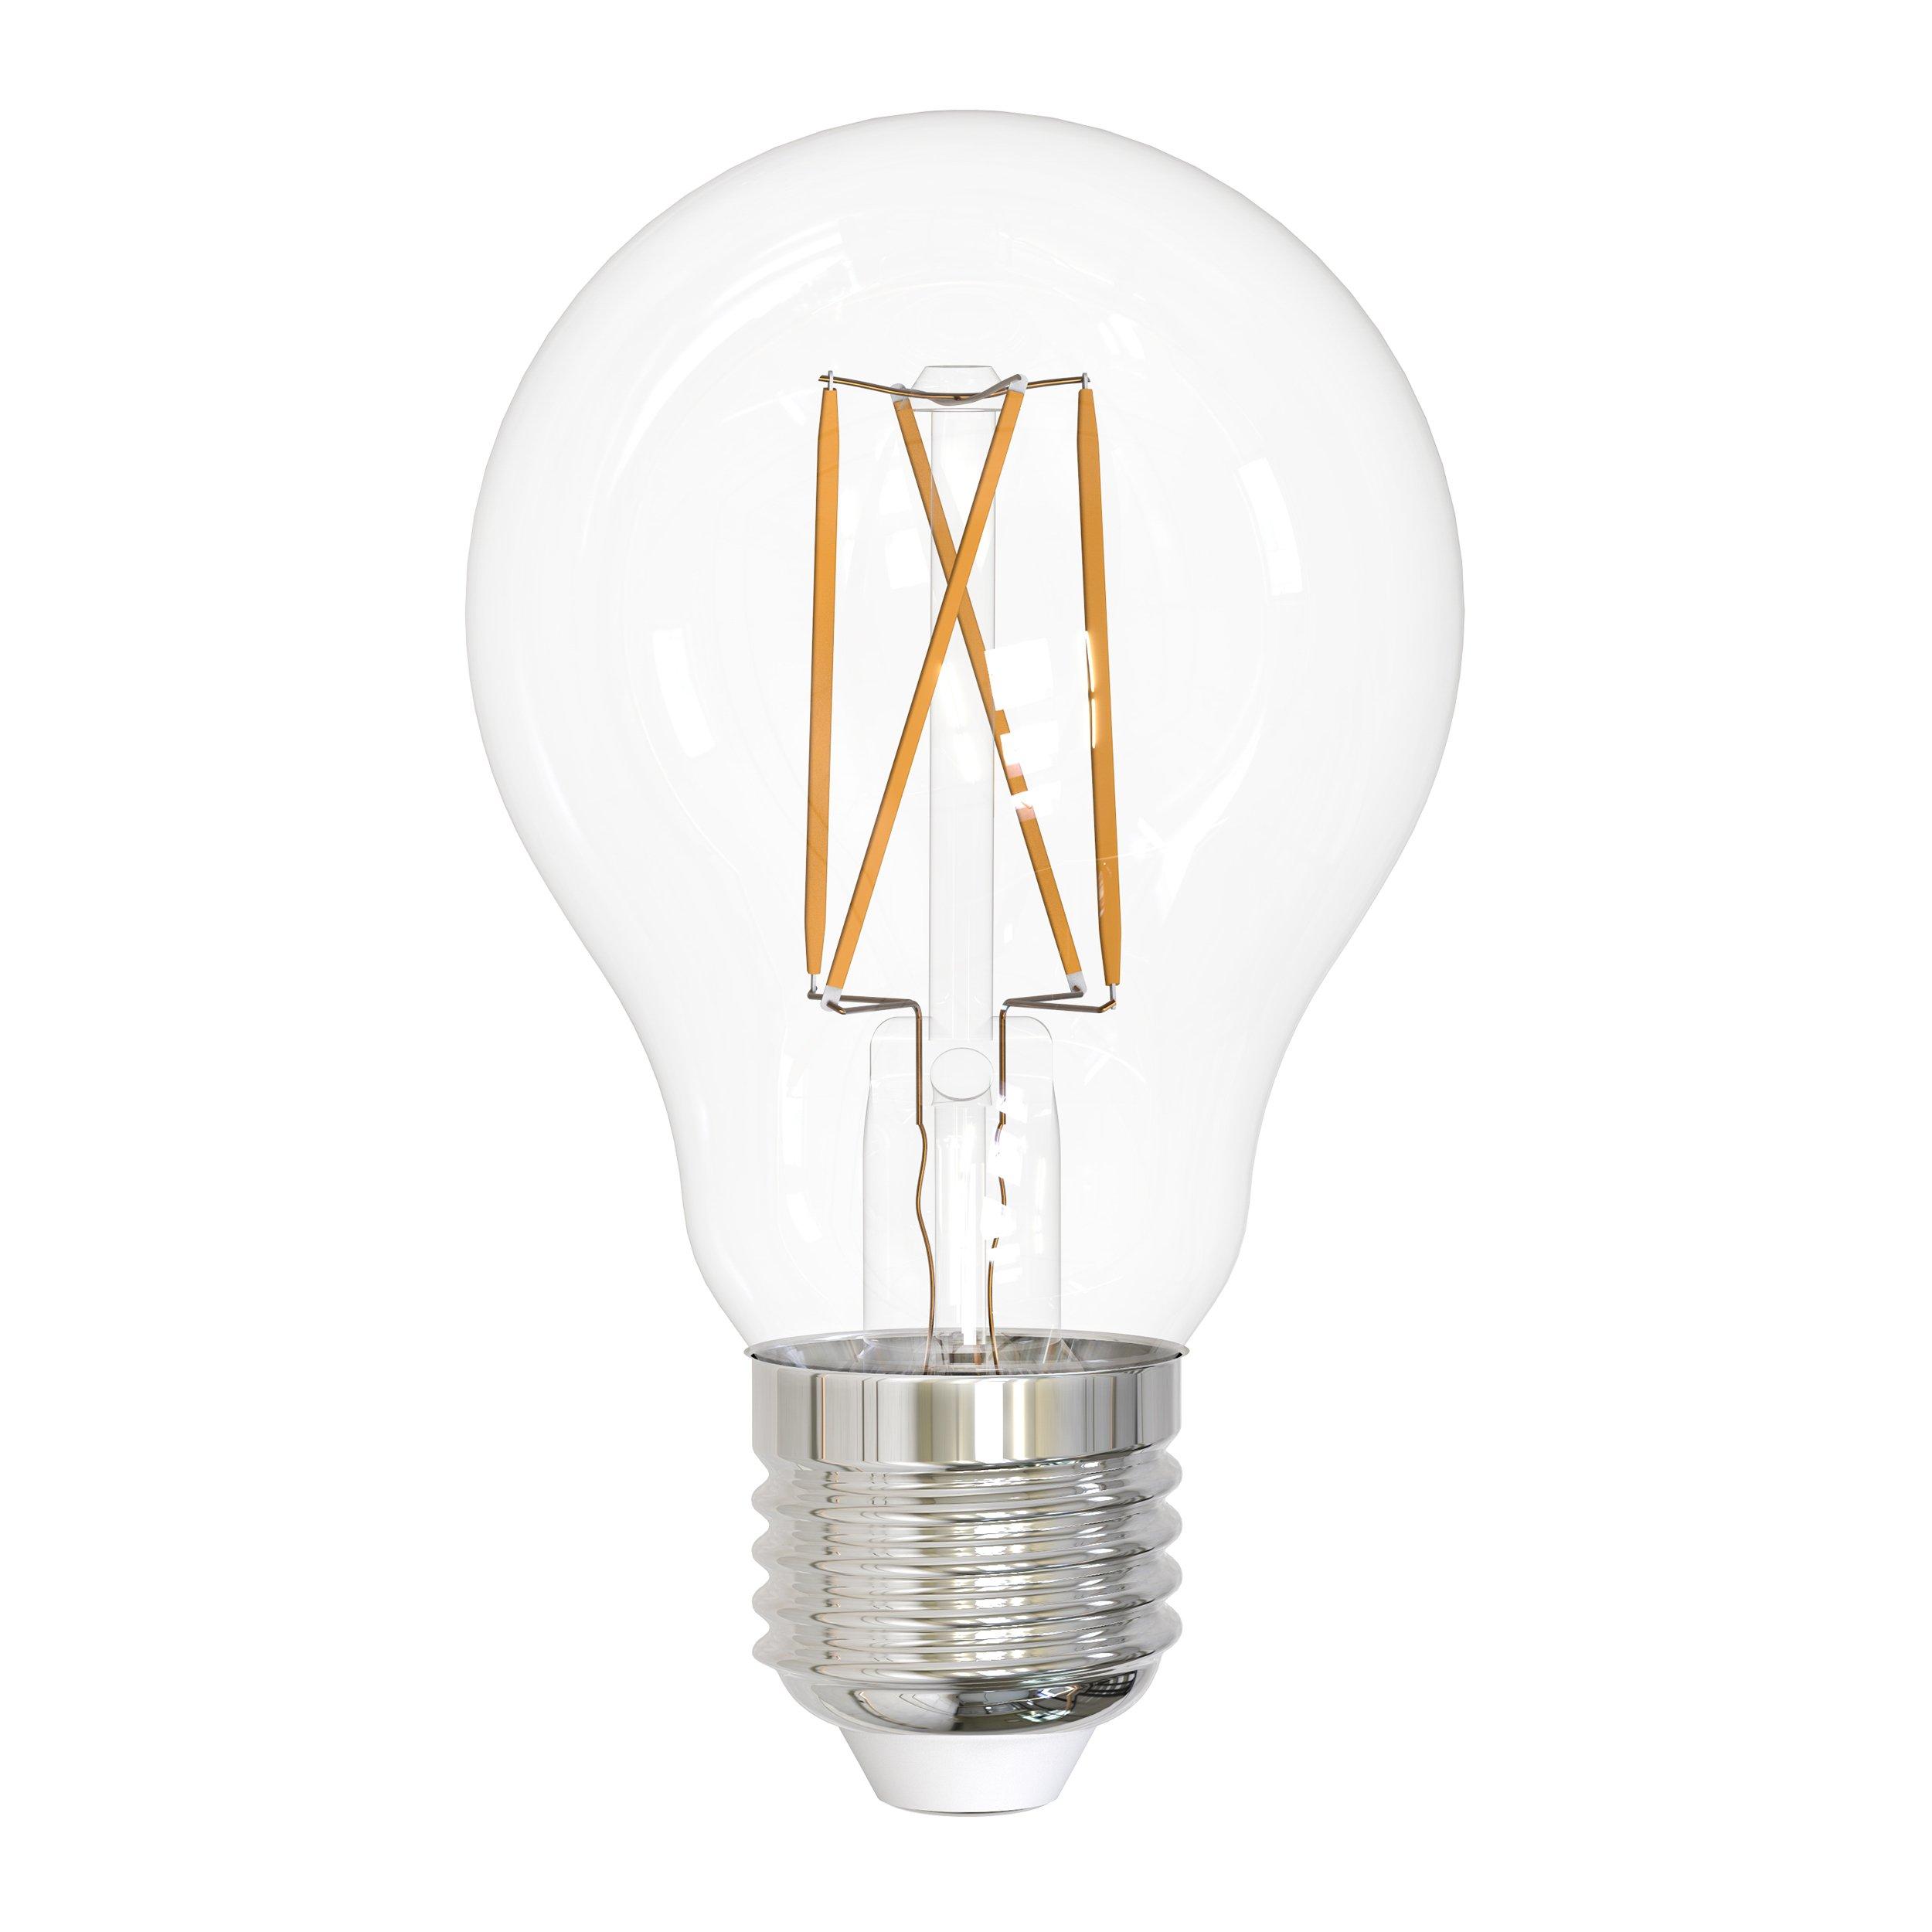 A19 5w Filament LED Light Bulb 2pk.